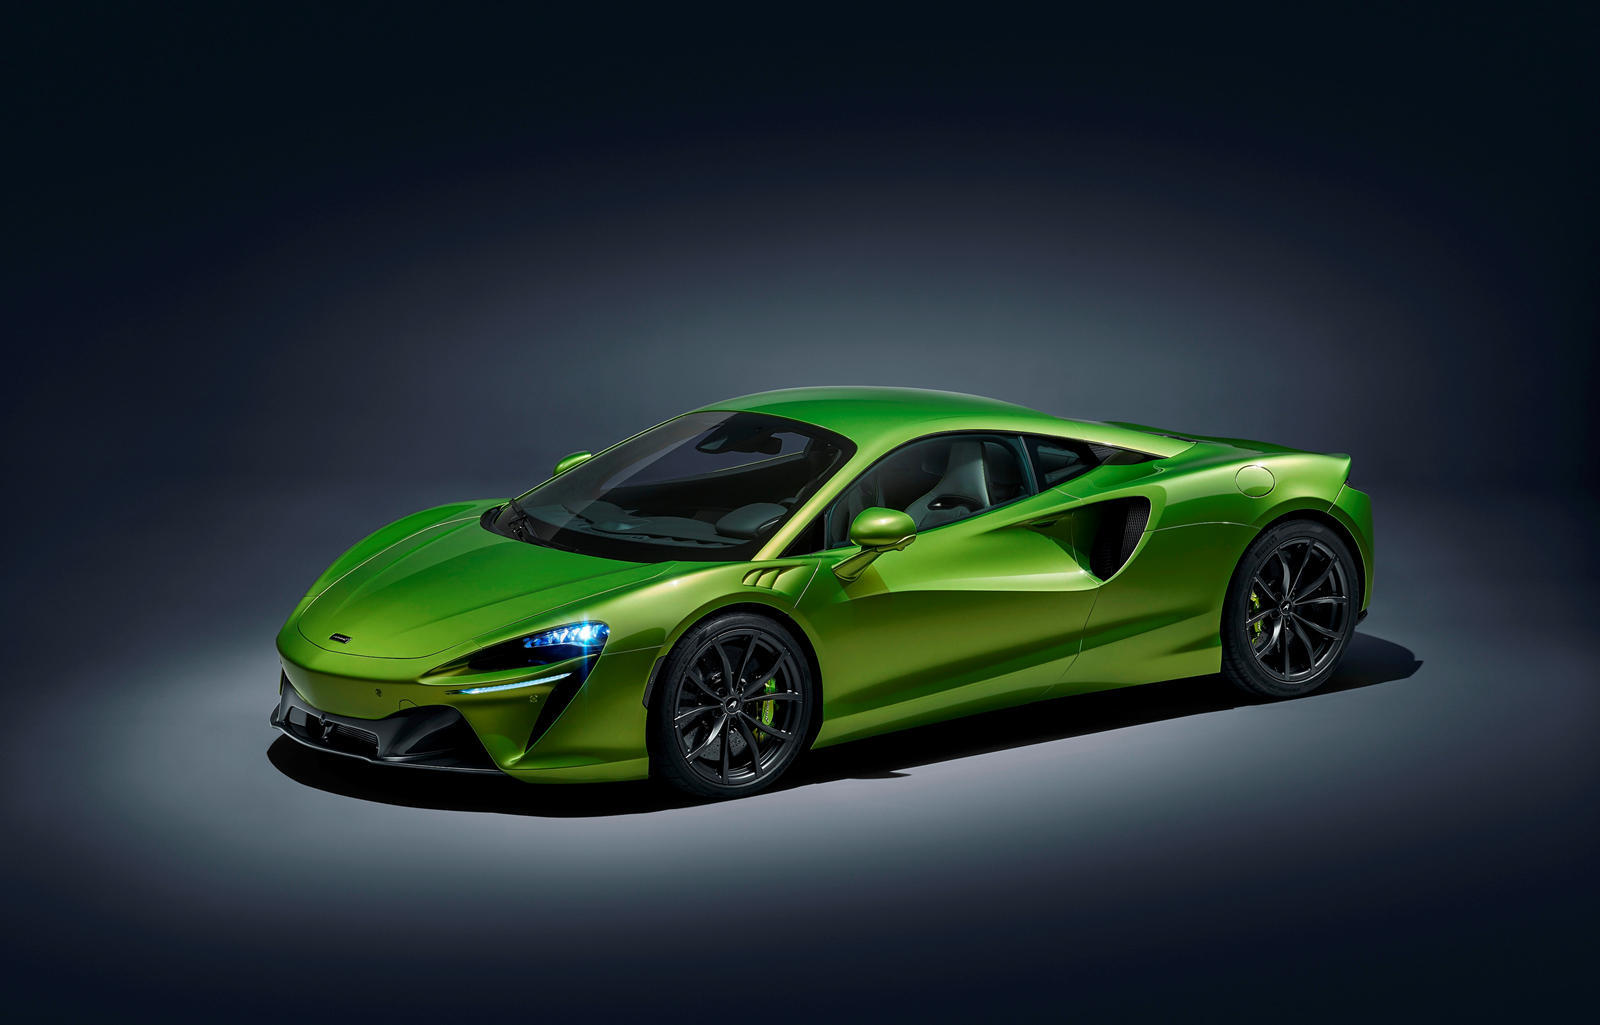 全新的artura在配色上采用了更加亮眼的荧光绿配色,搭配绿色的刹车